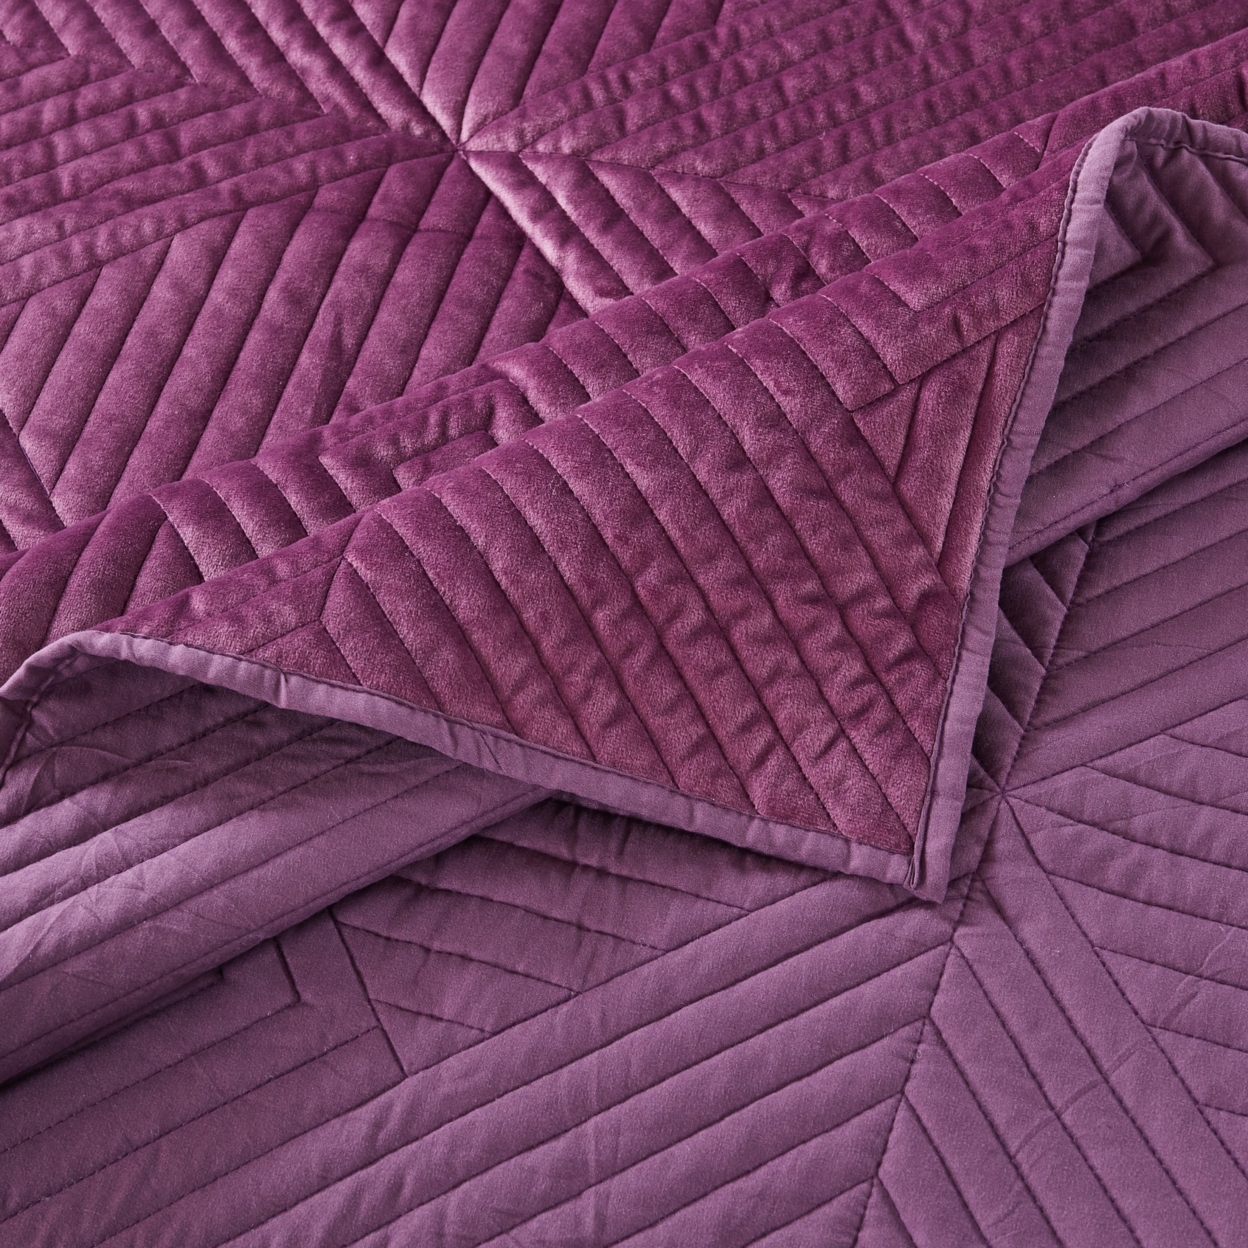 Rio 60 Inch Quilted Throw Blanket, Diamond Stitching, Purple Dutch Velvet- Saltoro Sherpi